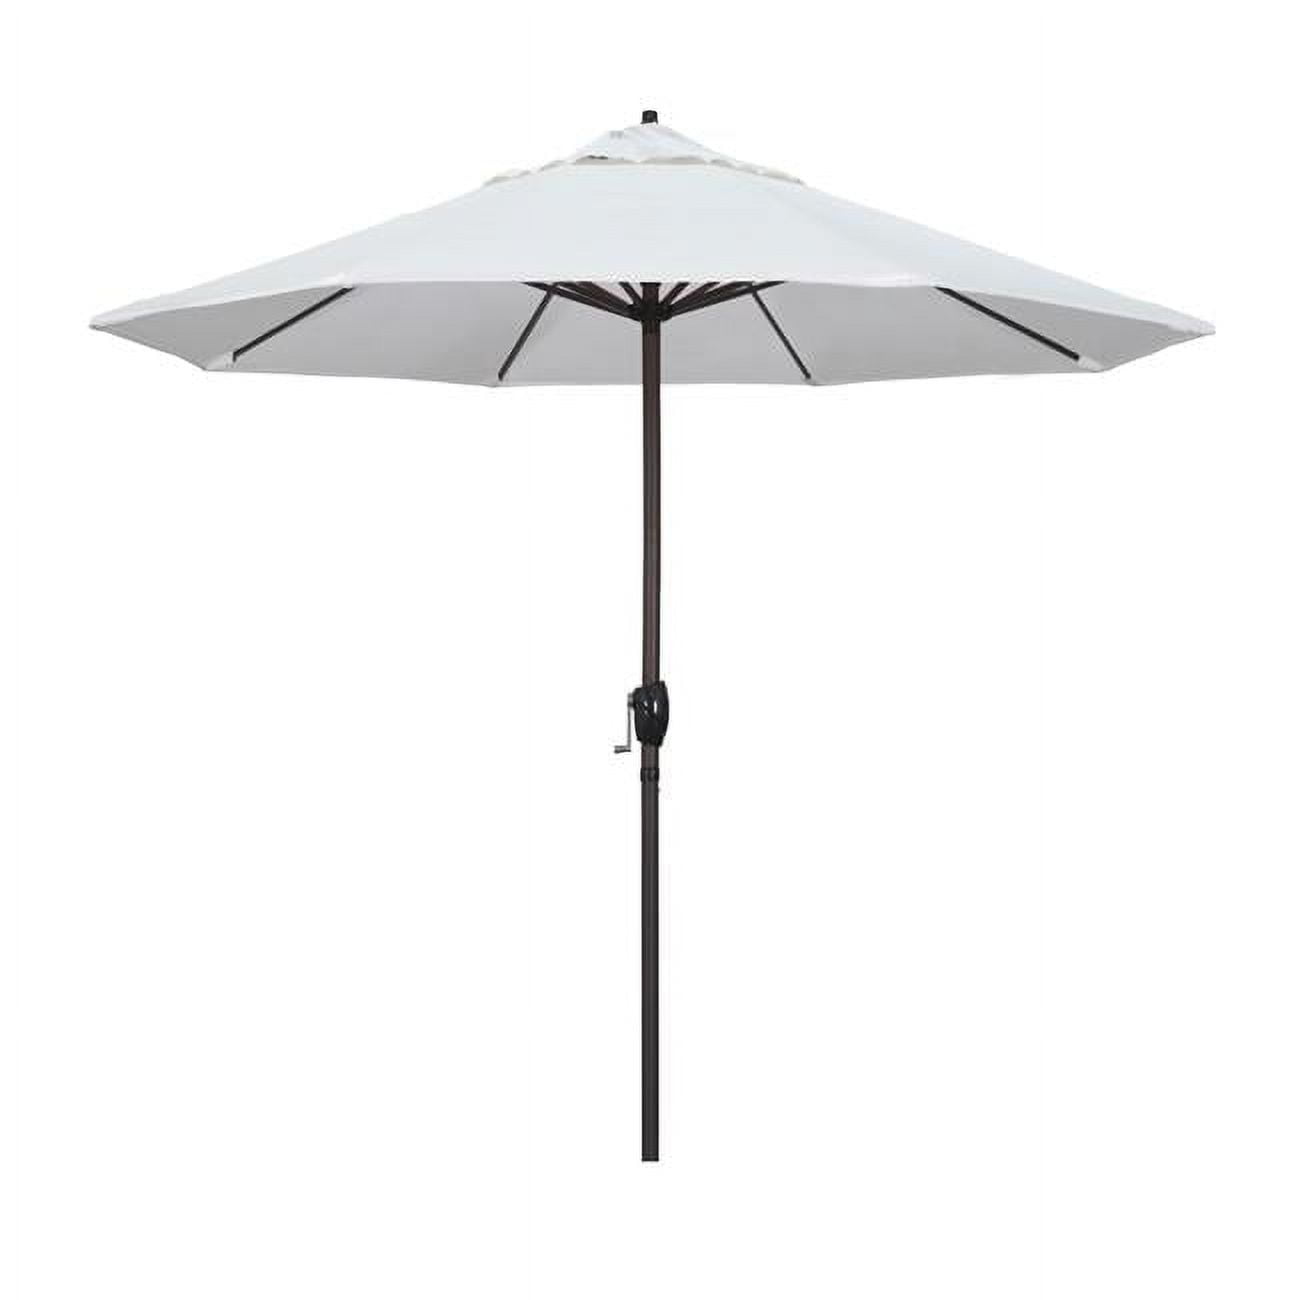 Ata908117-5404 9 Ft. Casa Series Patio Bronze Auto Tilt Crank Lift - Sunbrella 1a Natural Fabric